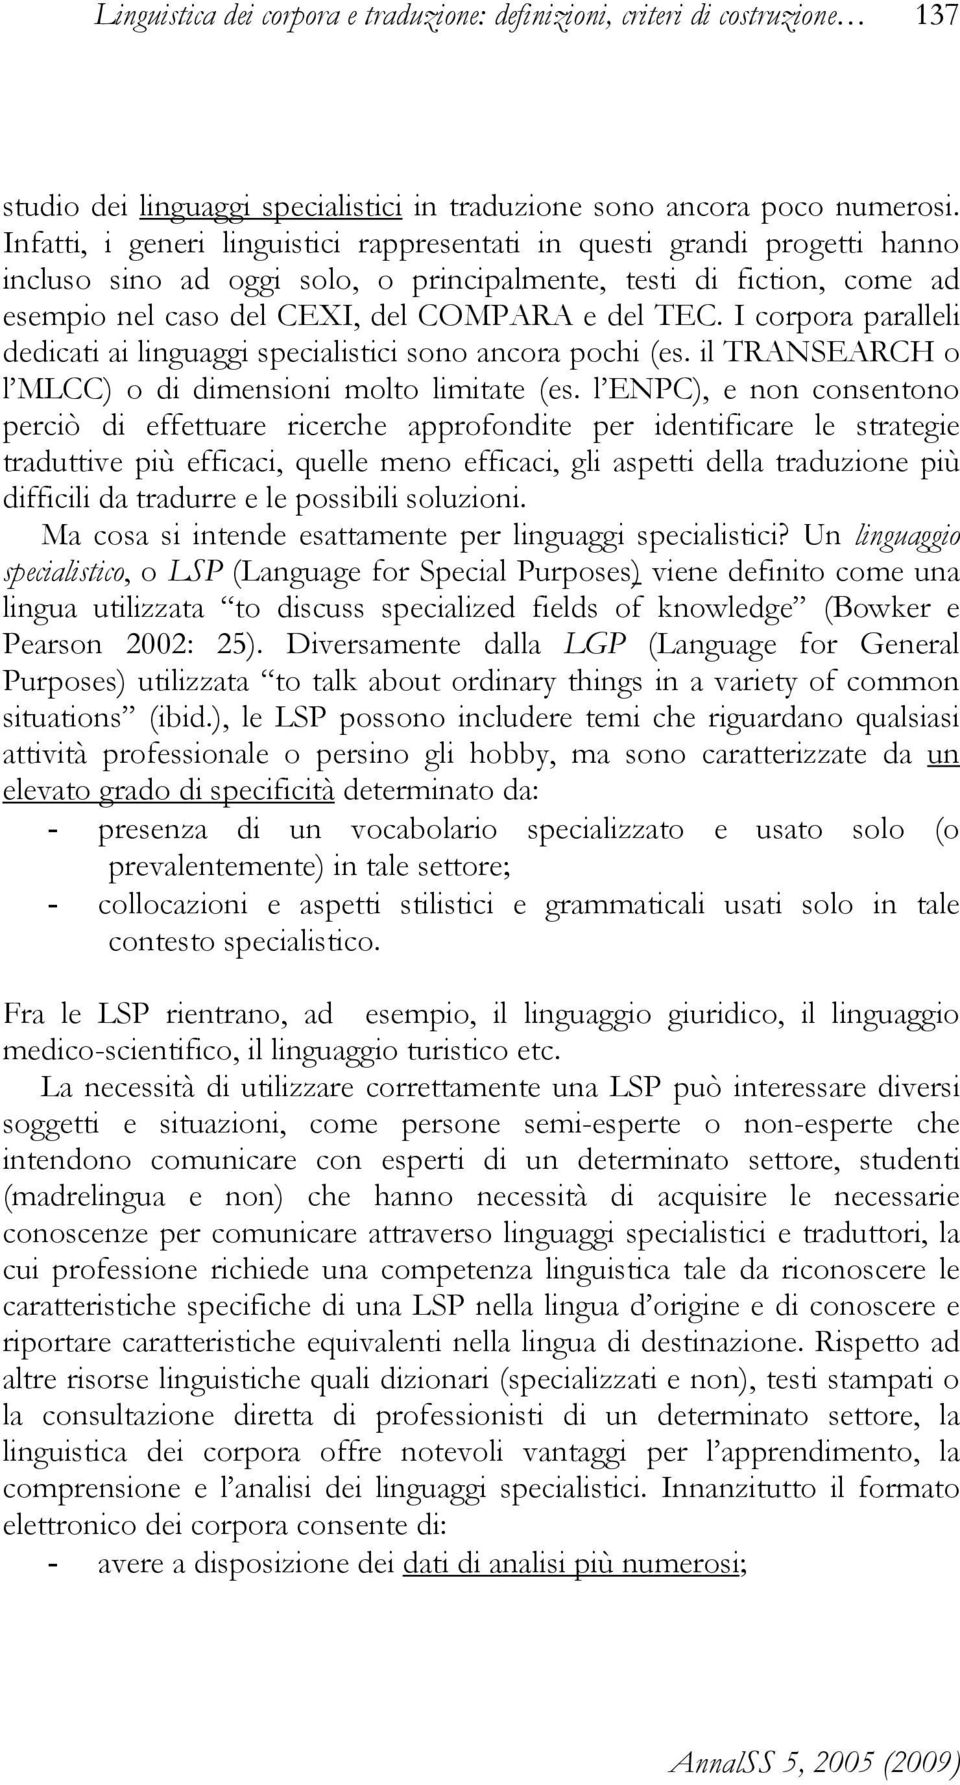 I corpora paralleli dedicati ai linguaggi specialistici sono ancora pochi (es. il TRANSEARCH o l MLCC) o di dimensioni molto limitate (es.